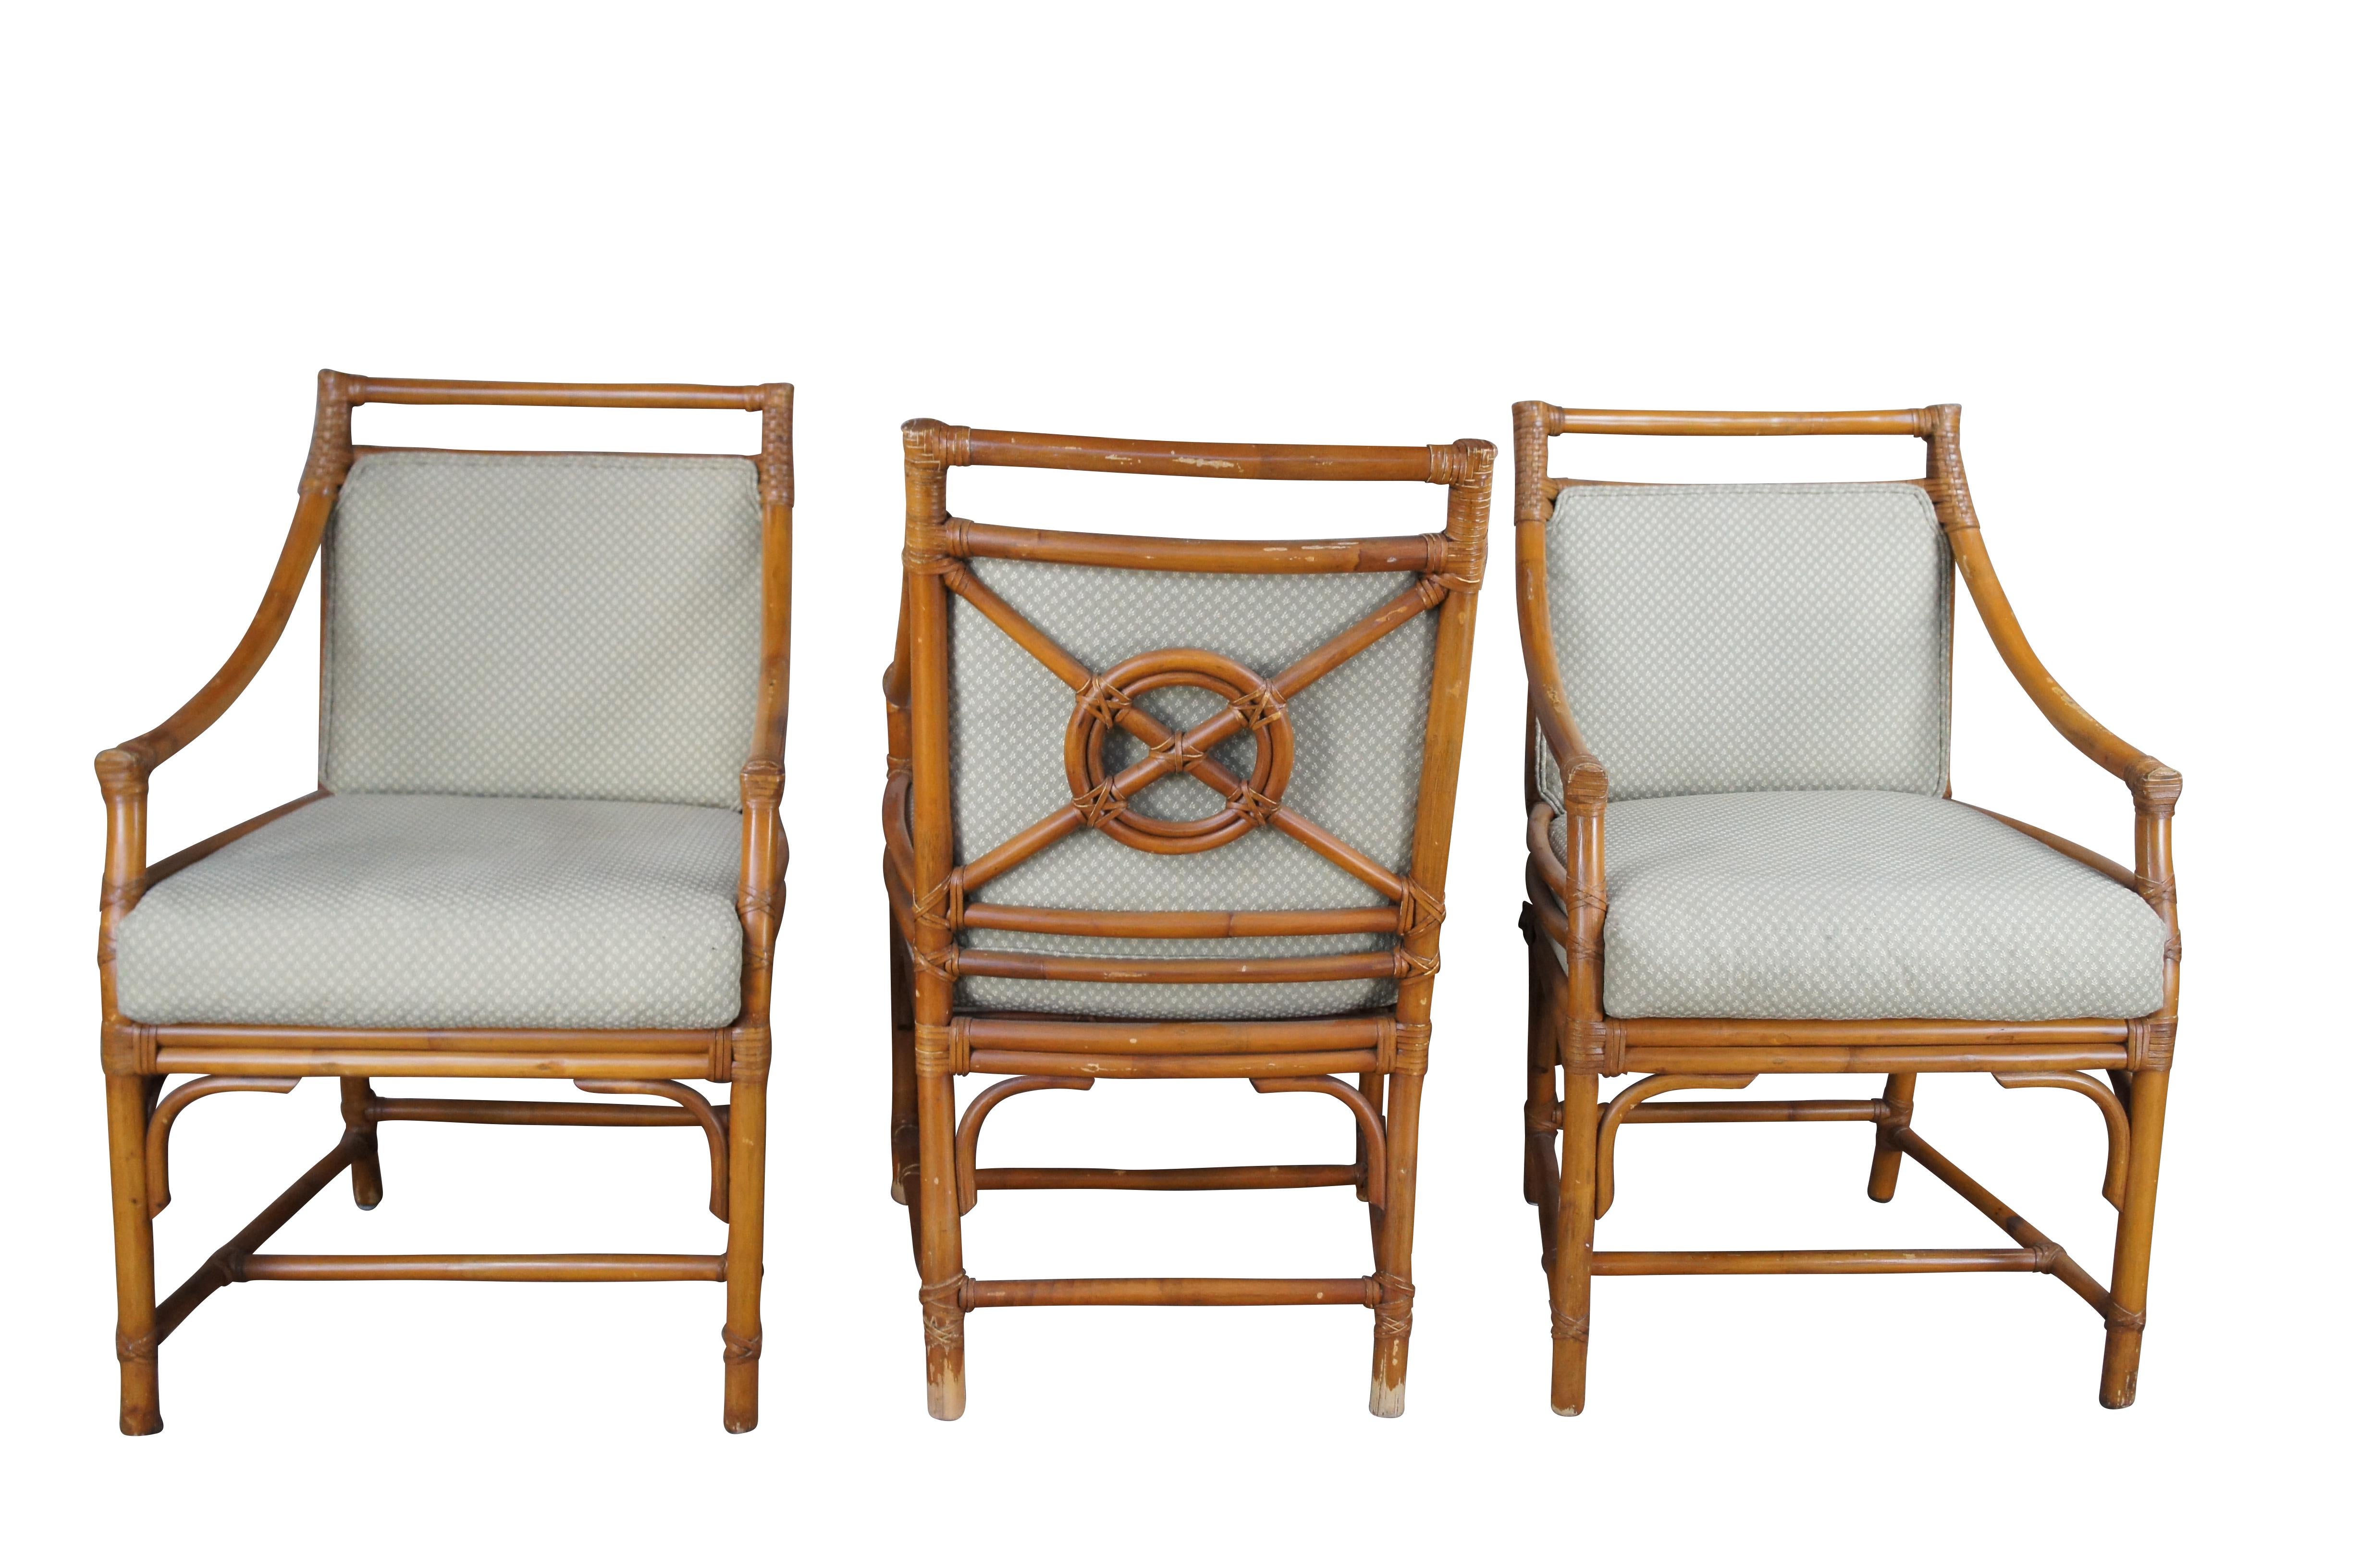 Ensemble de chaises à accoudoirs Iconic target back par The McGuire Furniture Company. Organic Modern avec un design bohémien. Fabriqué en faux bambou et en rotin avec des sièges en tissu. Les sièges sont verts avec des motifs de feuillage. 

John